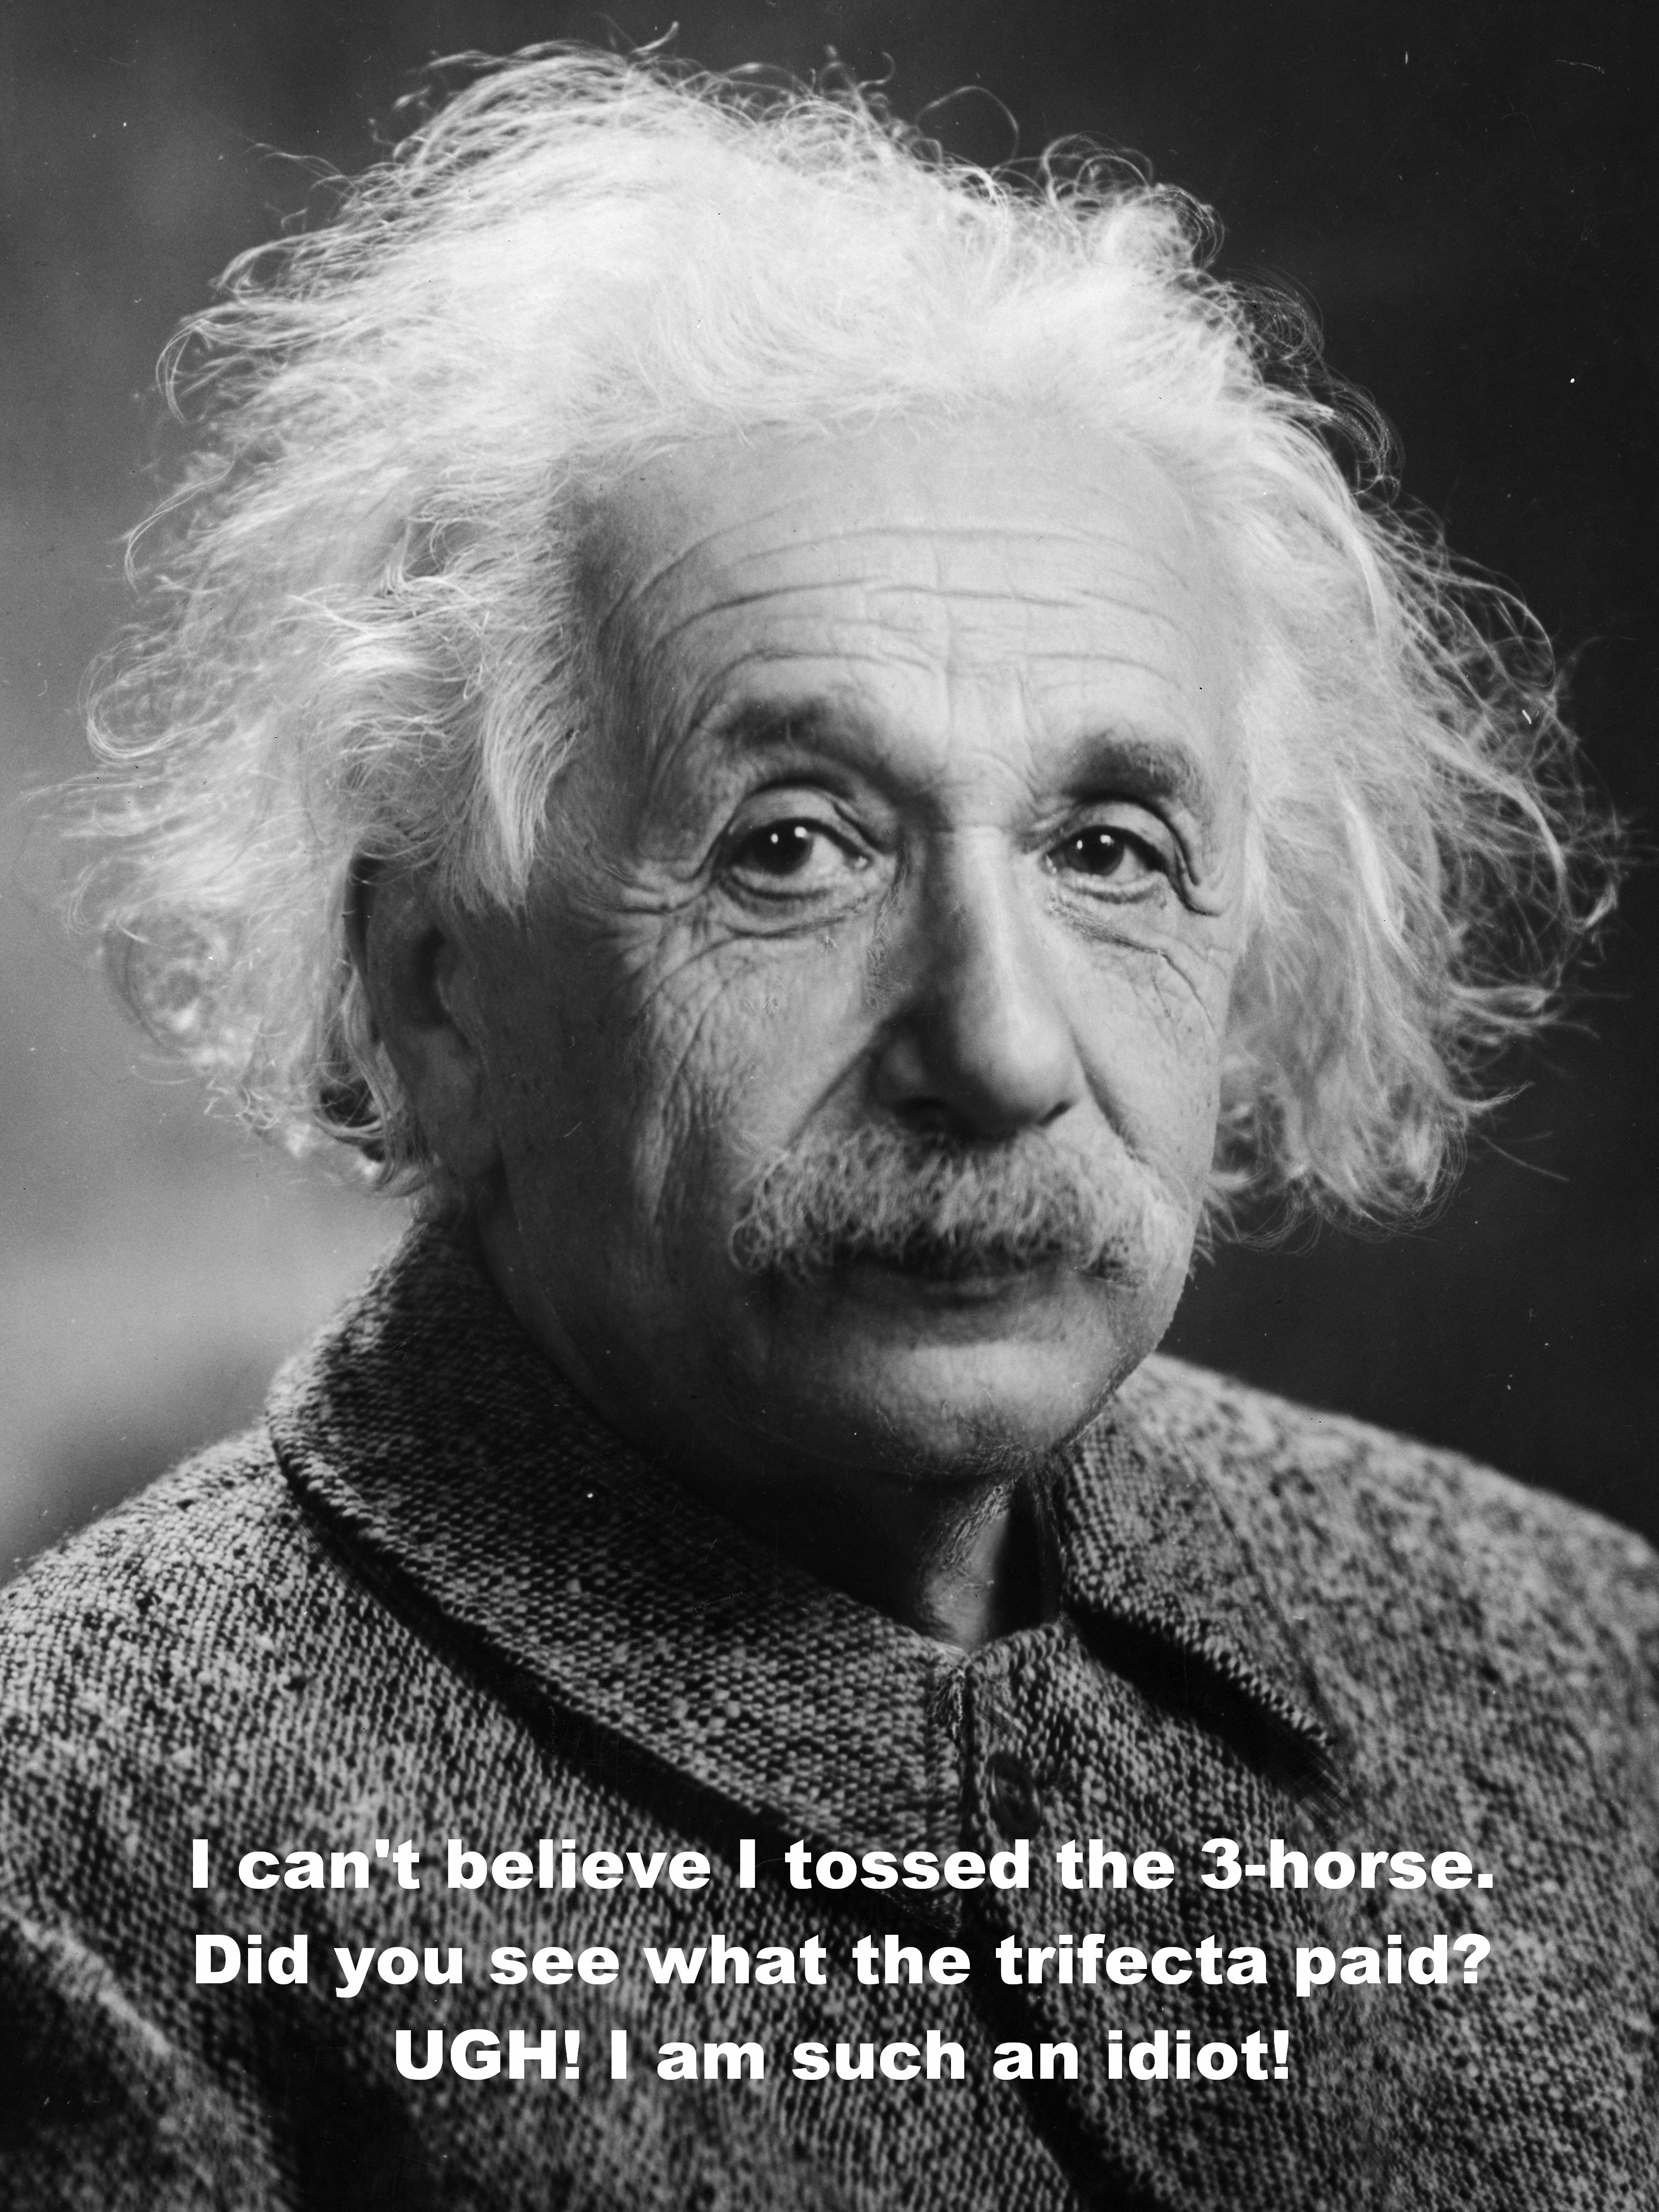 Albert Einstein Meme